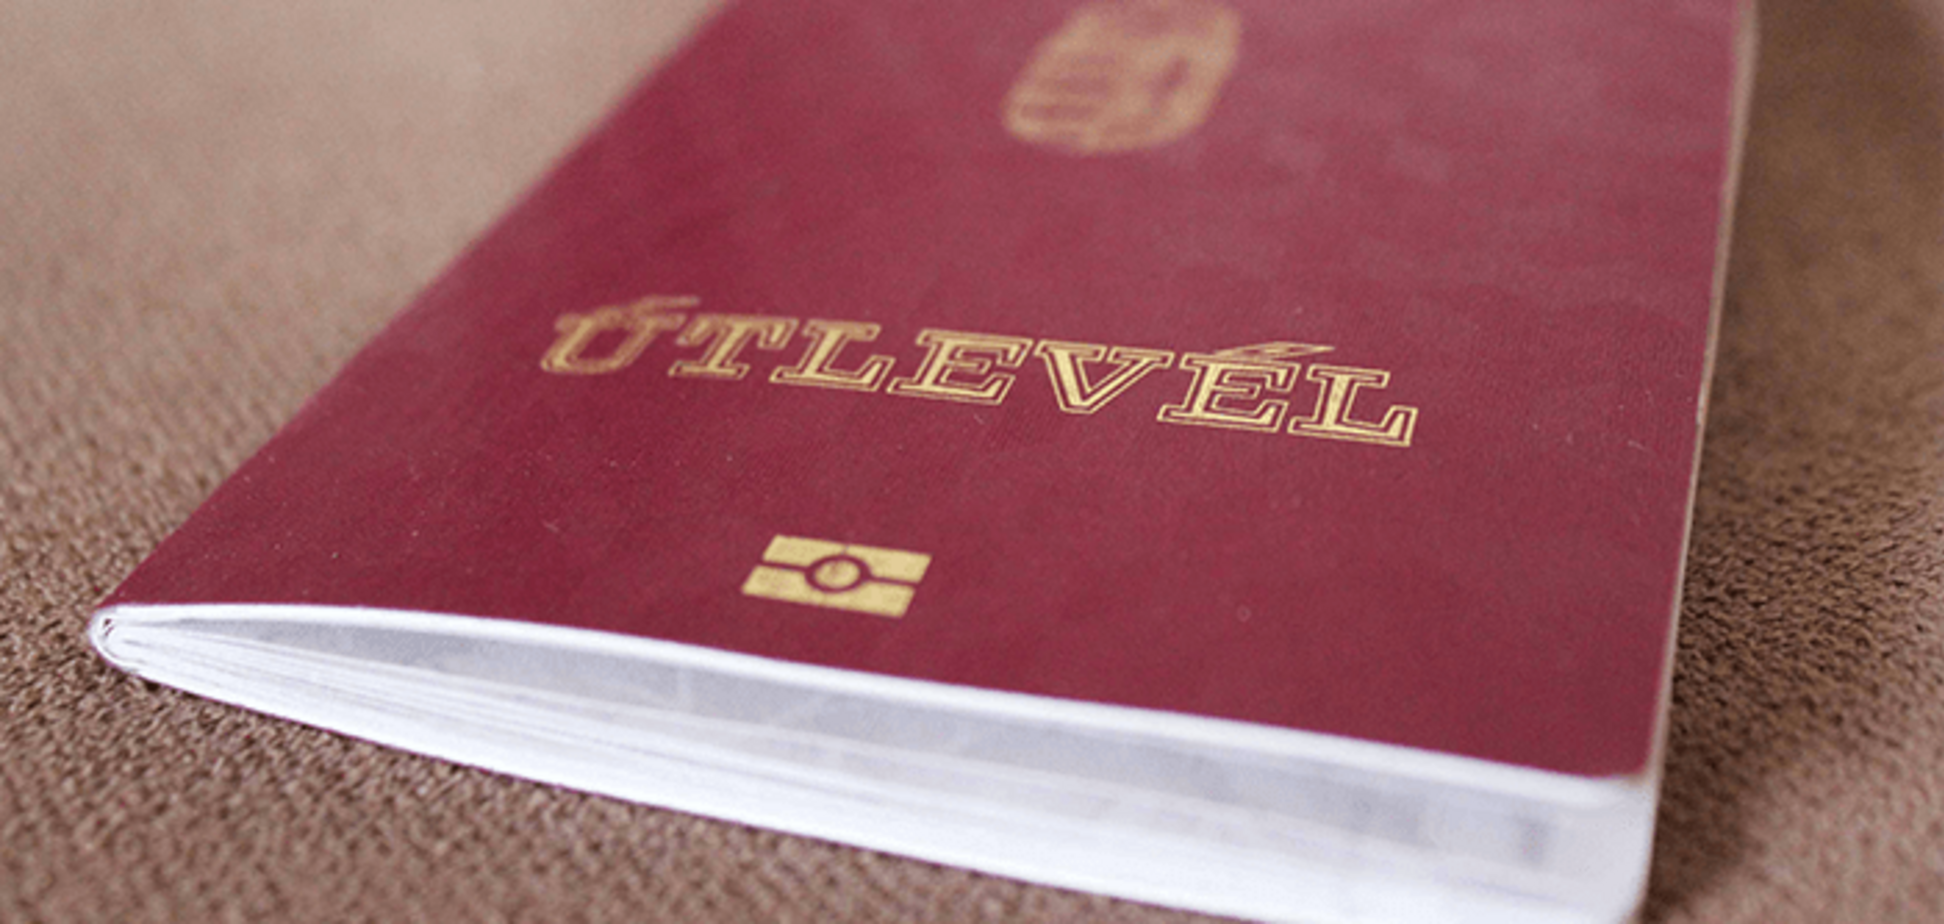 Втрата для України: стало відомо, скільки паспортів роздала Угорщина на Закарпатті